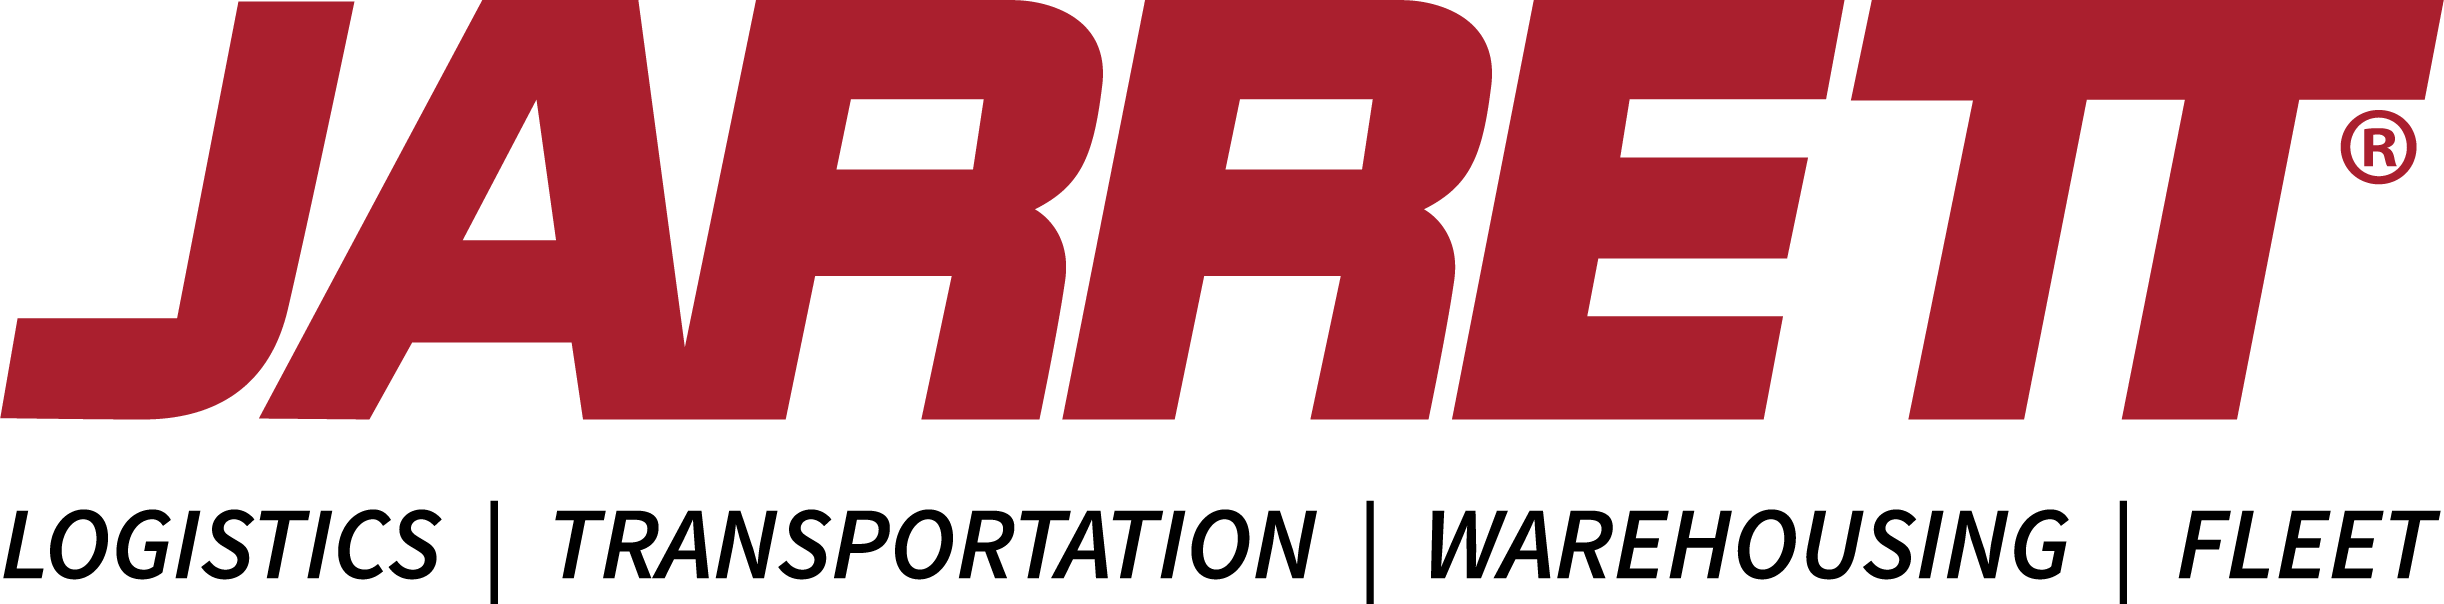 jarrett logo